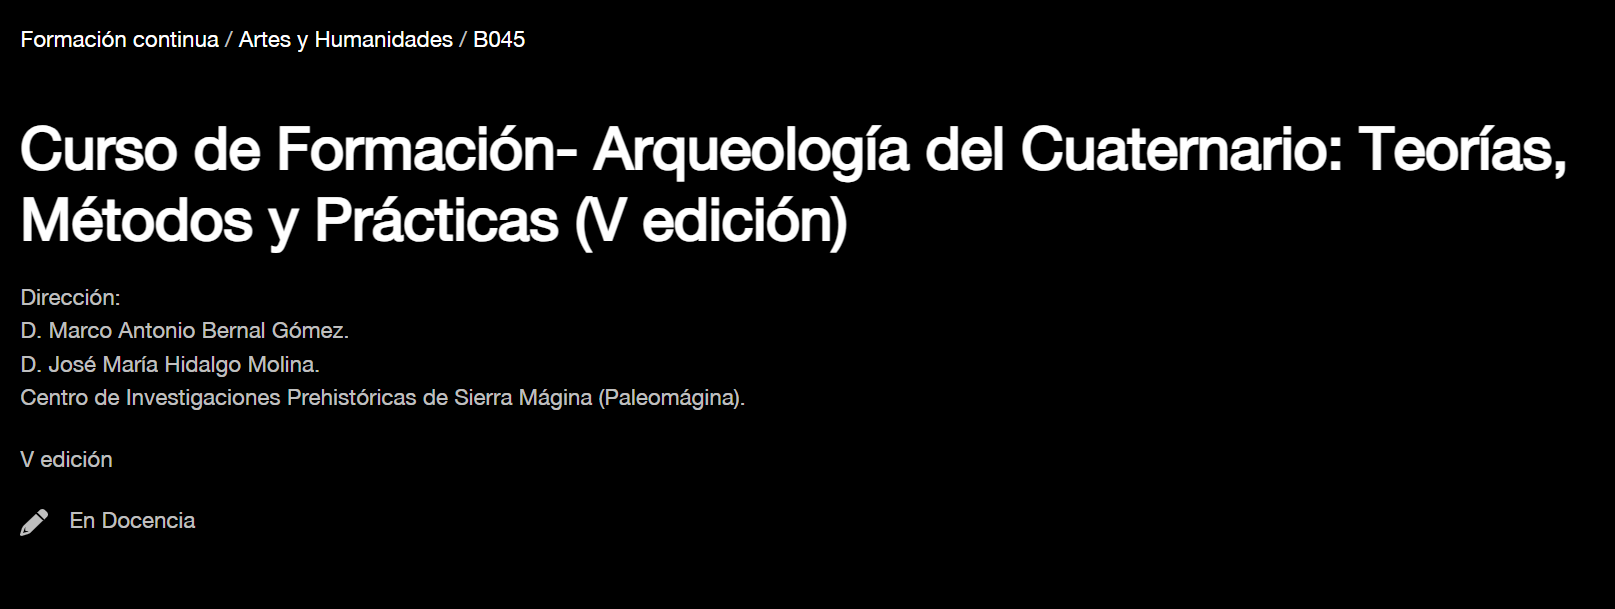 Curso de formación: “Arqueología del Cuaternario: Teorías, Métodos y Prácticas”